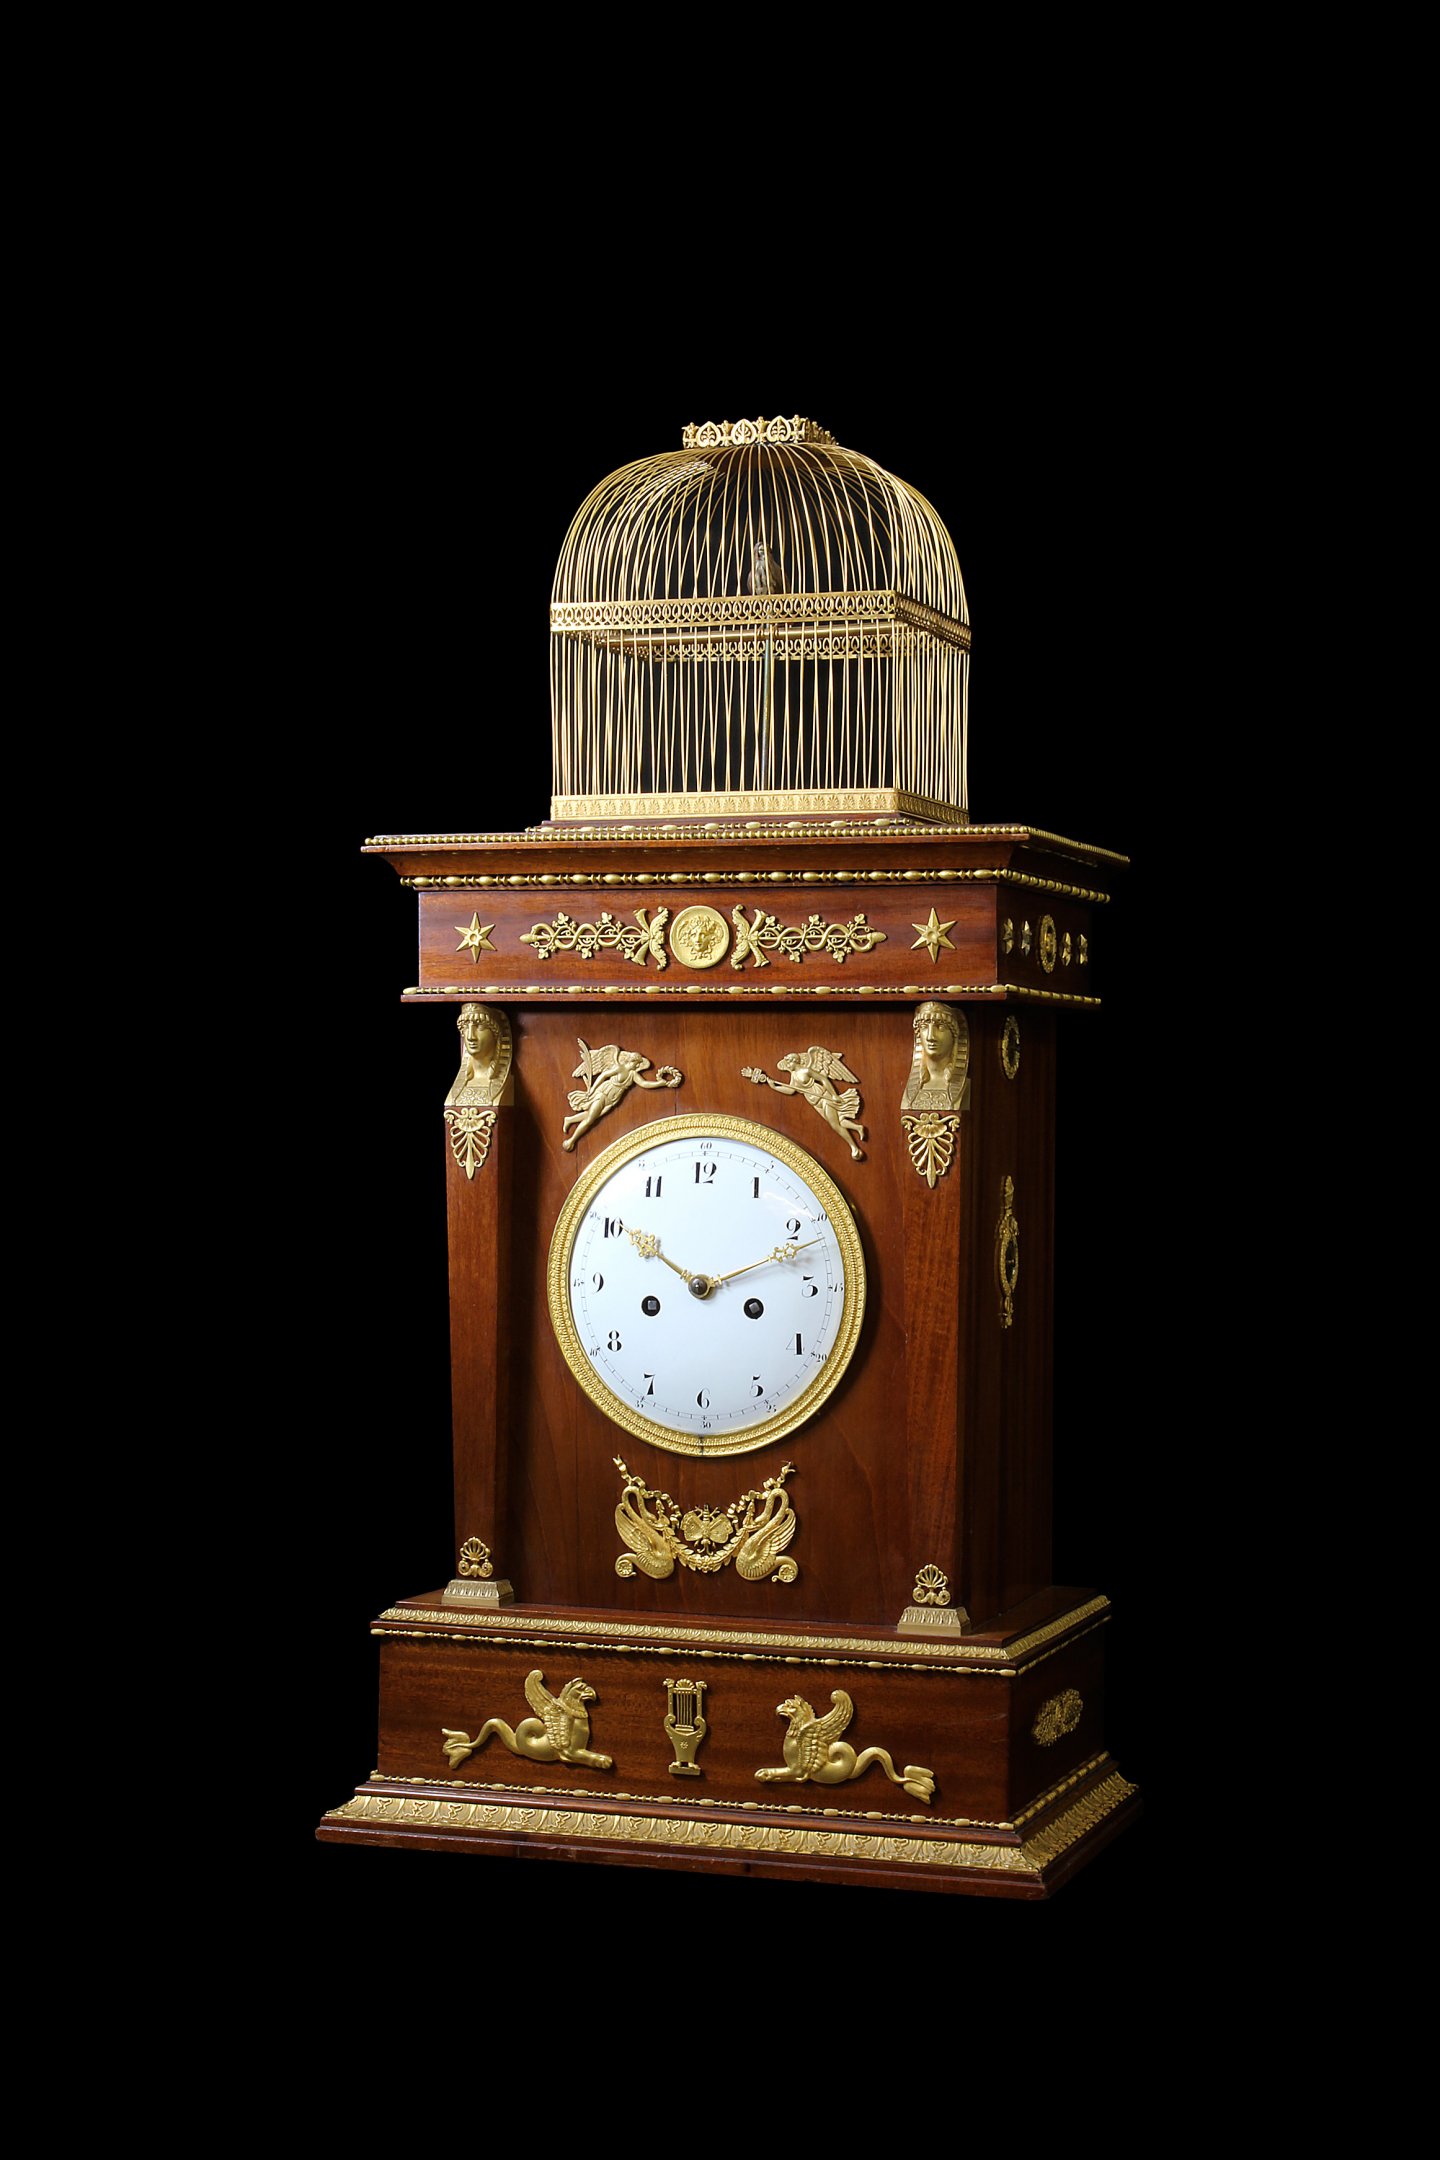 ジャケ・ドロー情報：ジャケ・ドローは、歴史的時計の修復活動支援を表明